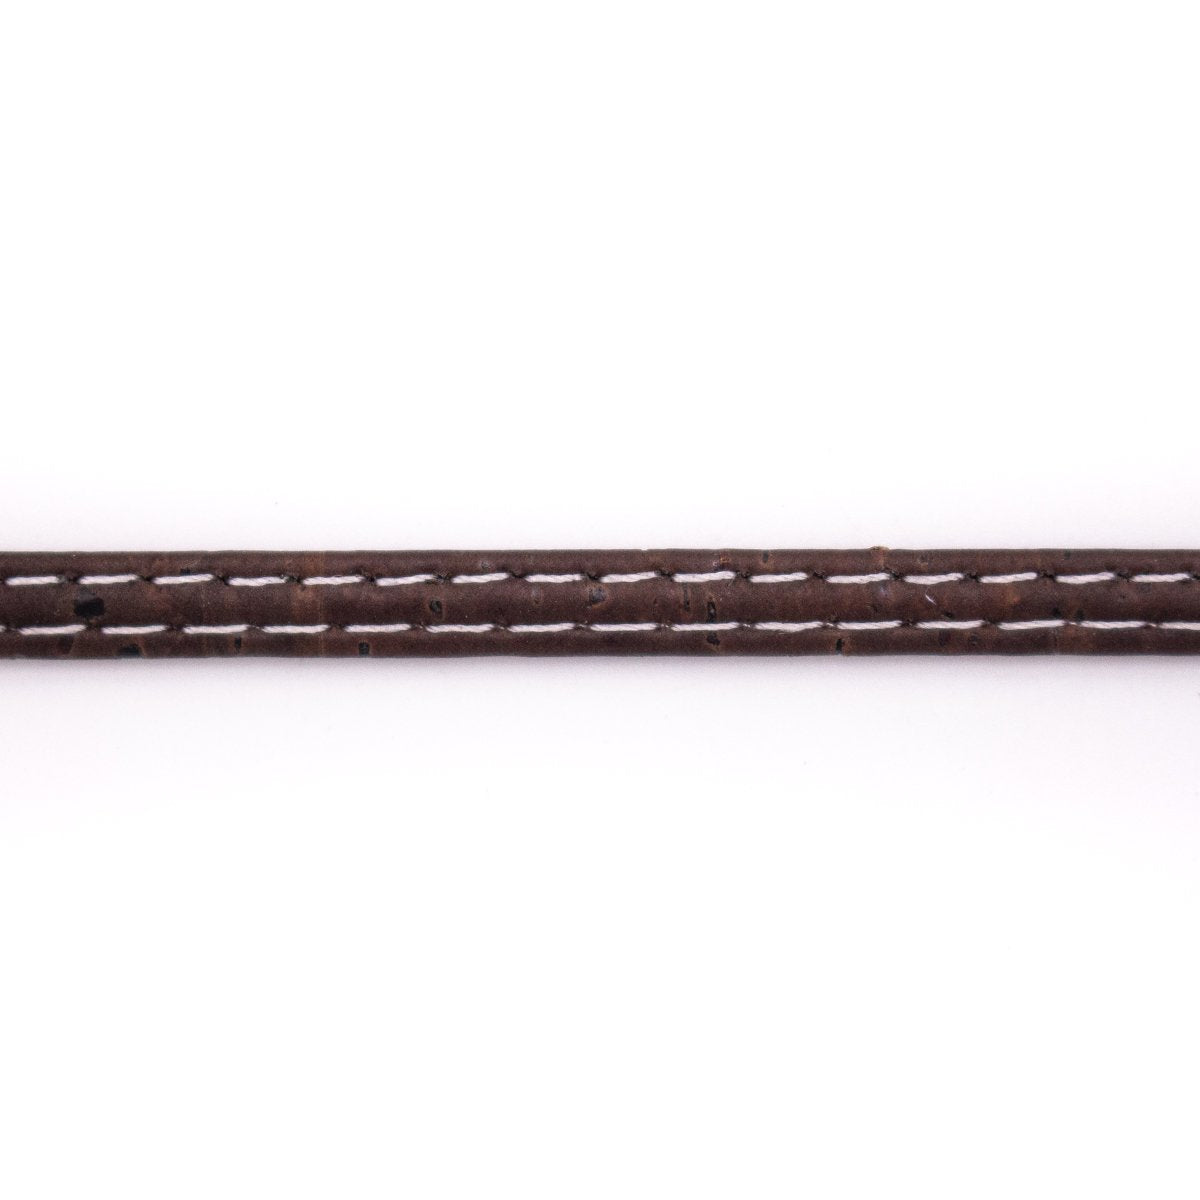 10 meters of 5mm Flat Brown Cork Cord COR-512